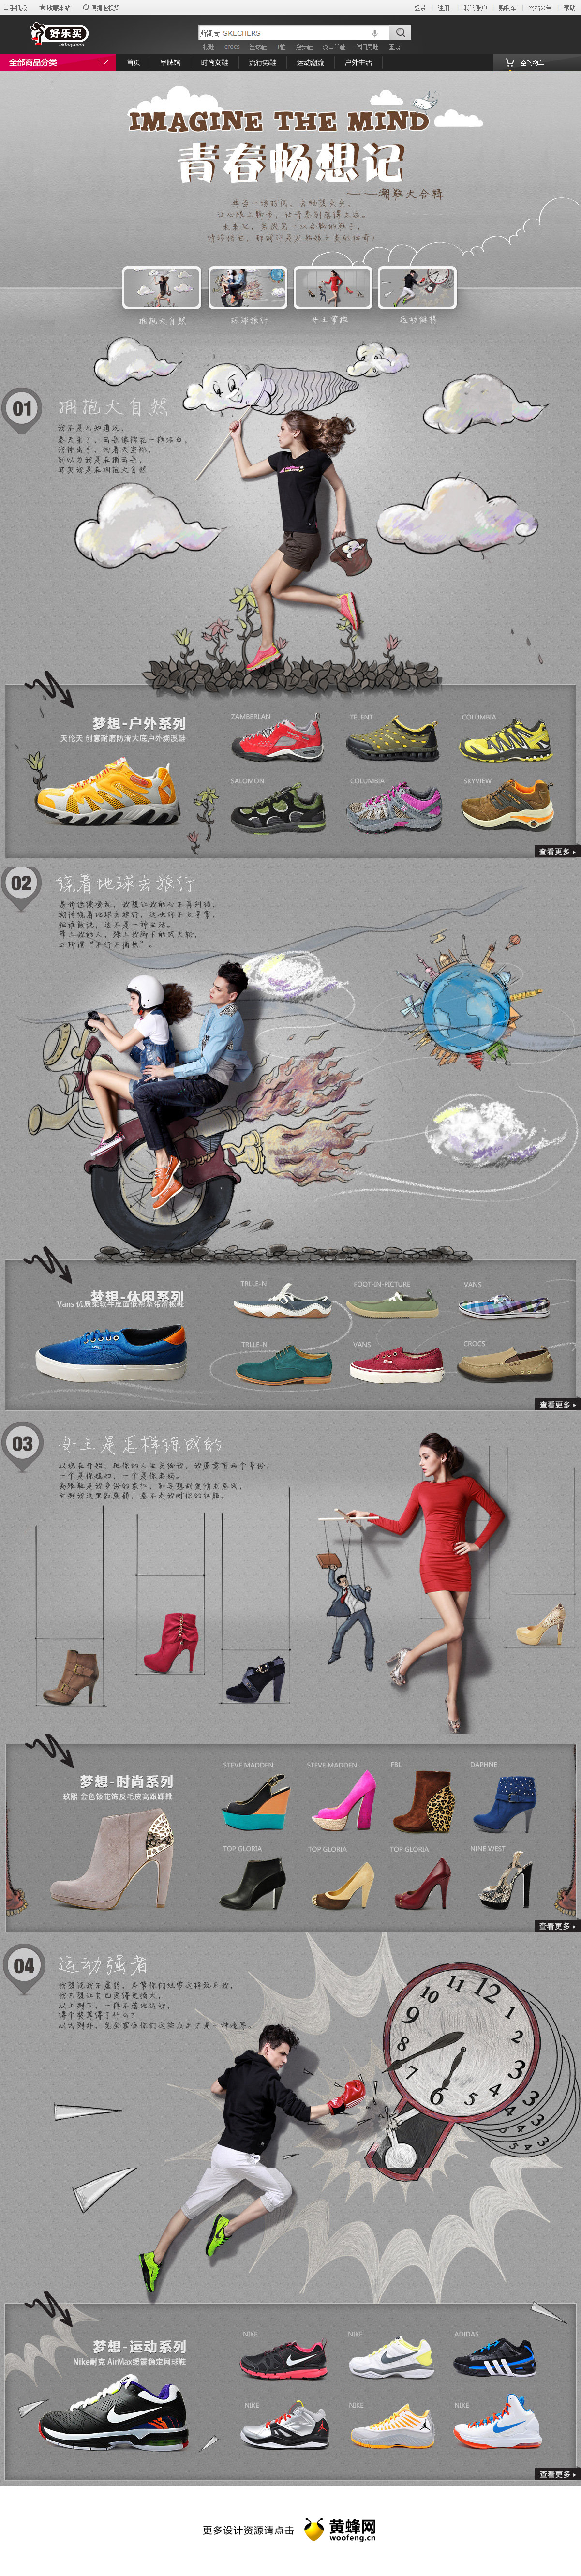 梦想生活之绘画故事篇购物专题网页设计，来源自黄蜂网https://woofeng.cn/web/